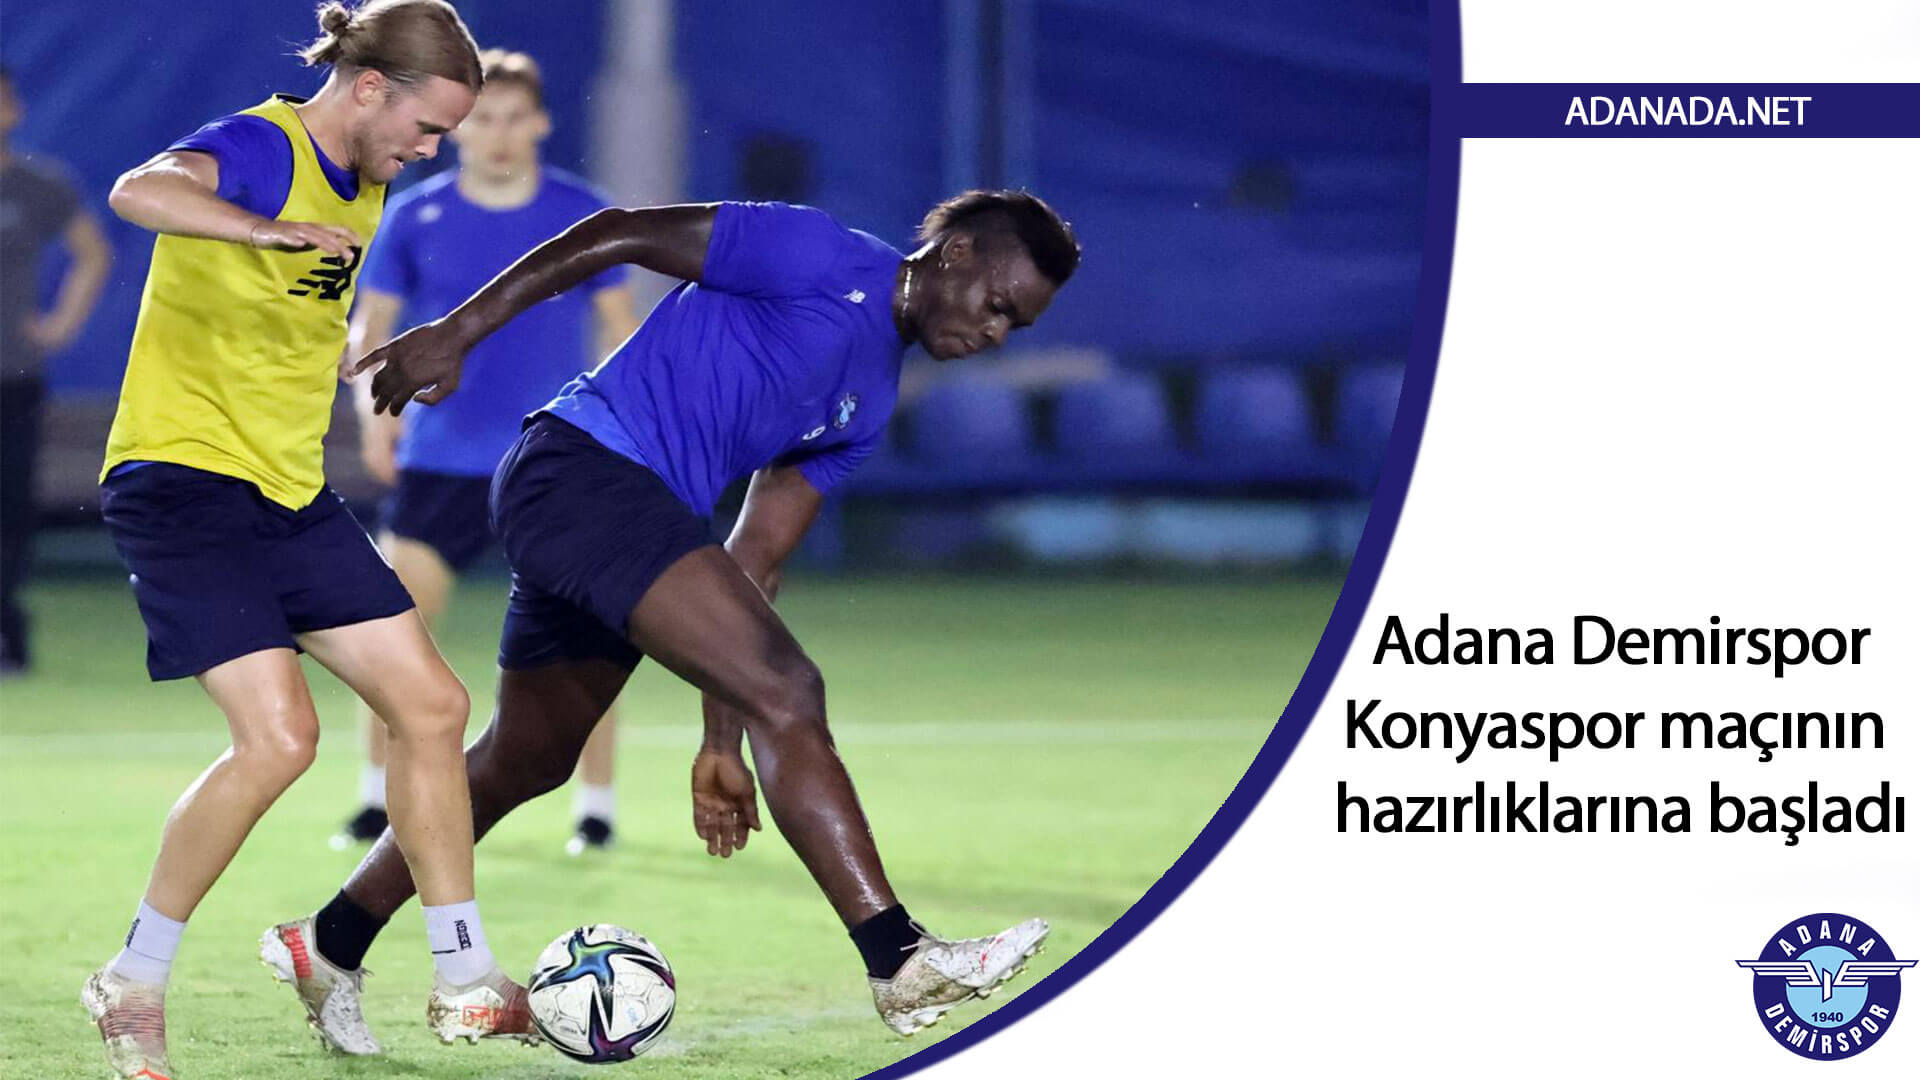 Adana Demirspor, Konyaspor maçının hazırlıklarına başladı